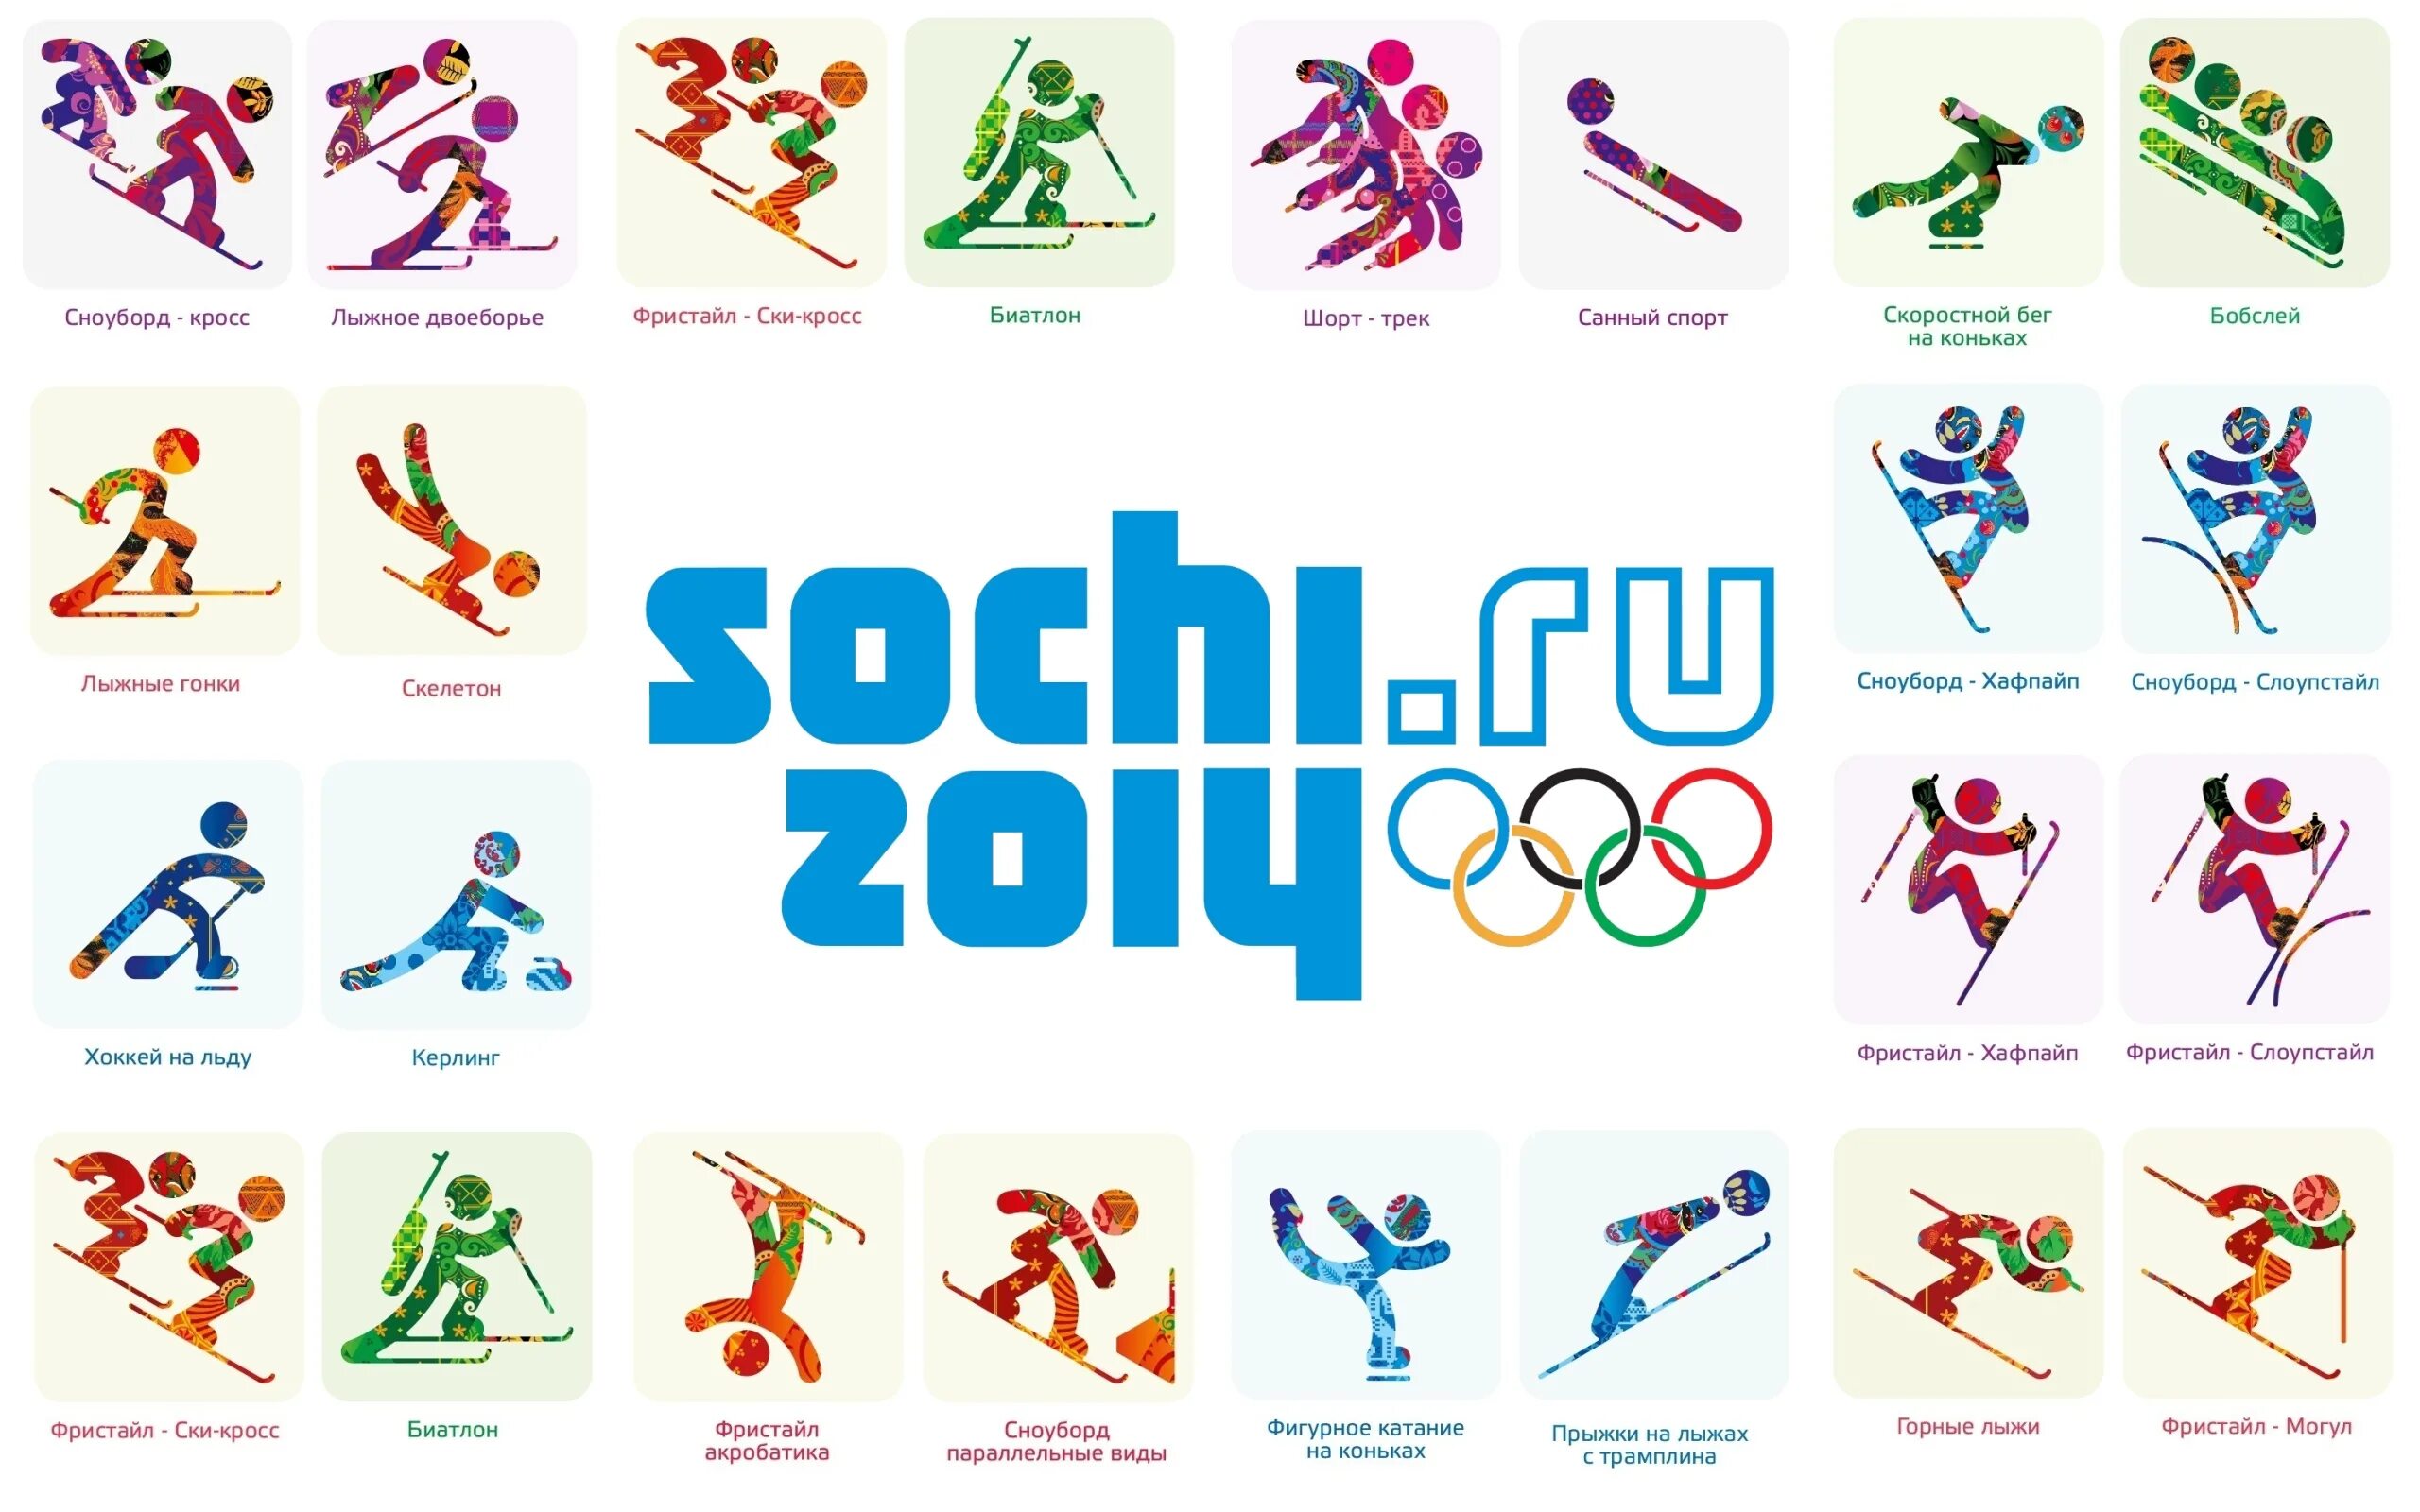 Какие есть спортивные знаки. Символы зимних видов спорта в Сочи. Пиктограммы зимних видов спорта Сочи. Виды зимнего спорта на Олимпийских играх таблица. Эмблемы видов спорта в картинках.